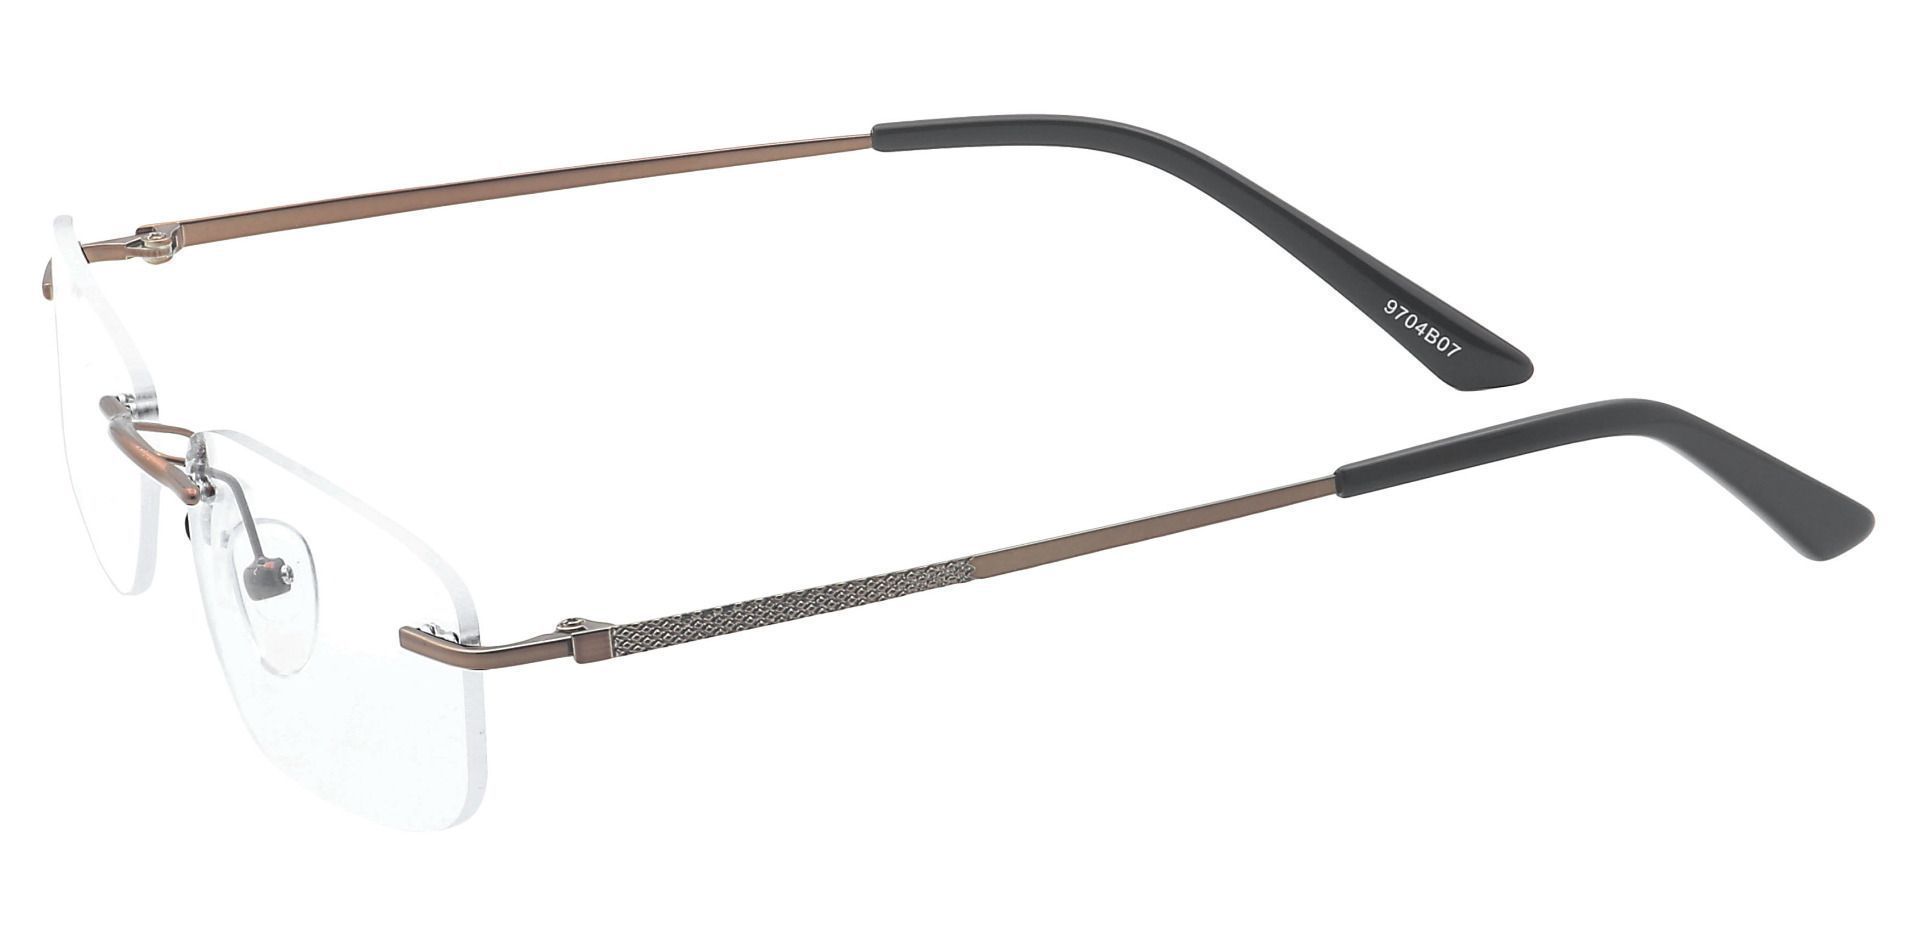 Remi Rimless Progressive Glasses - Brown